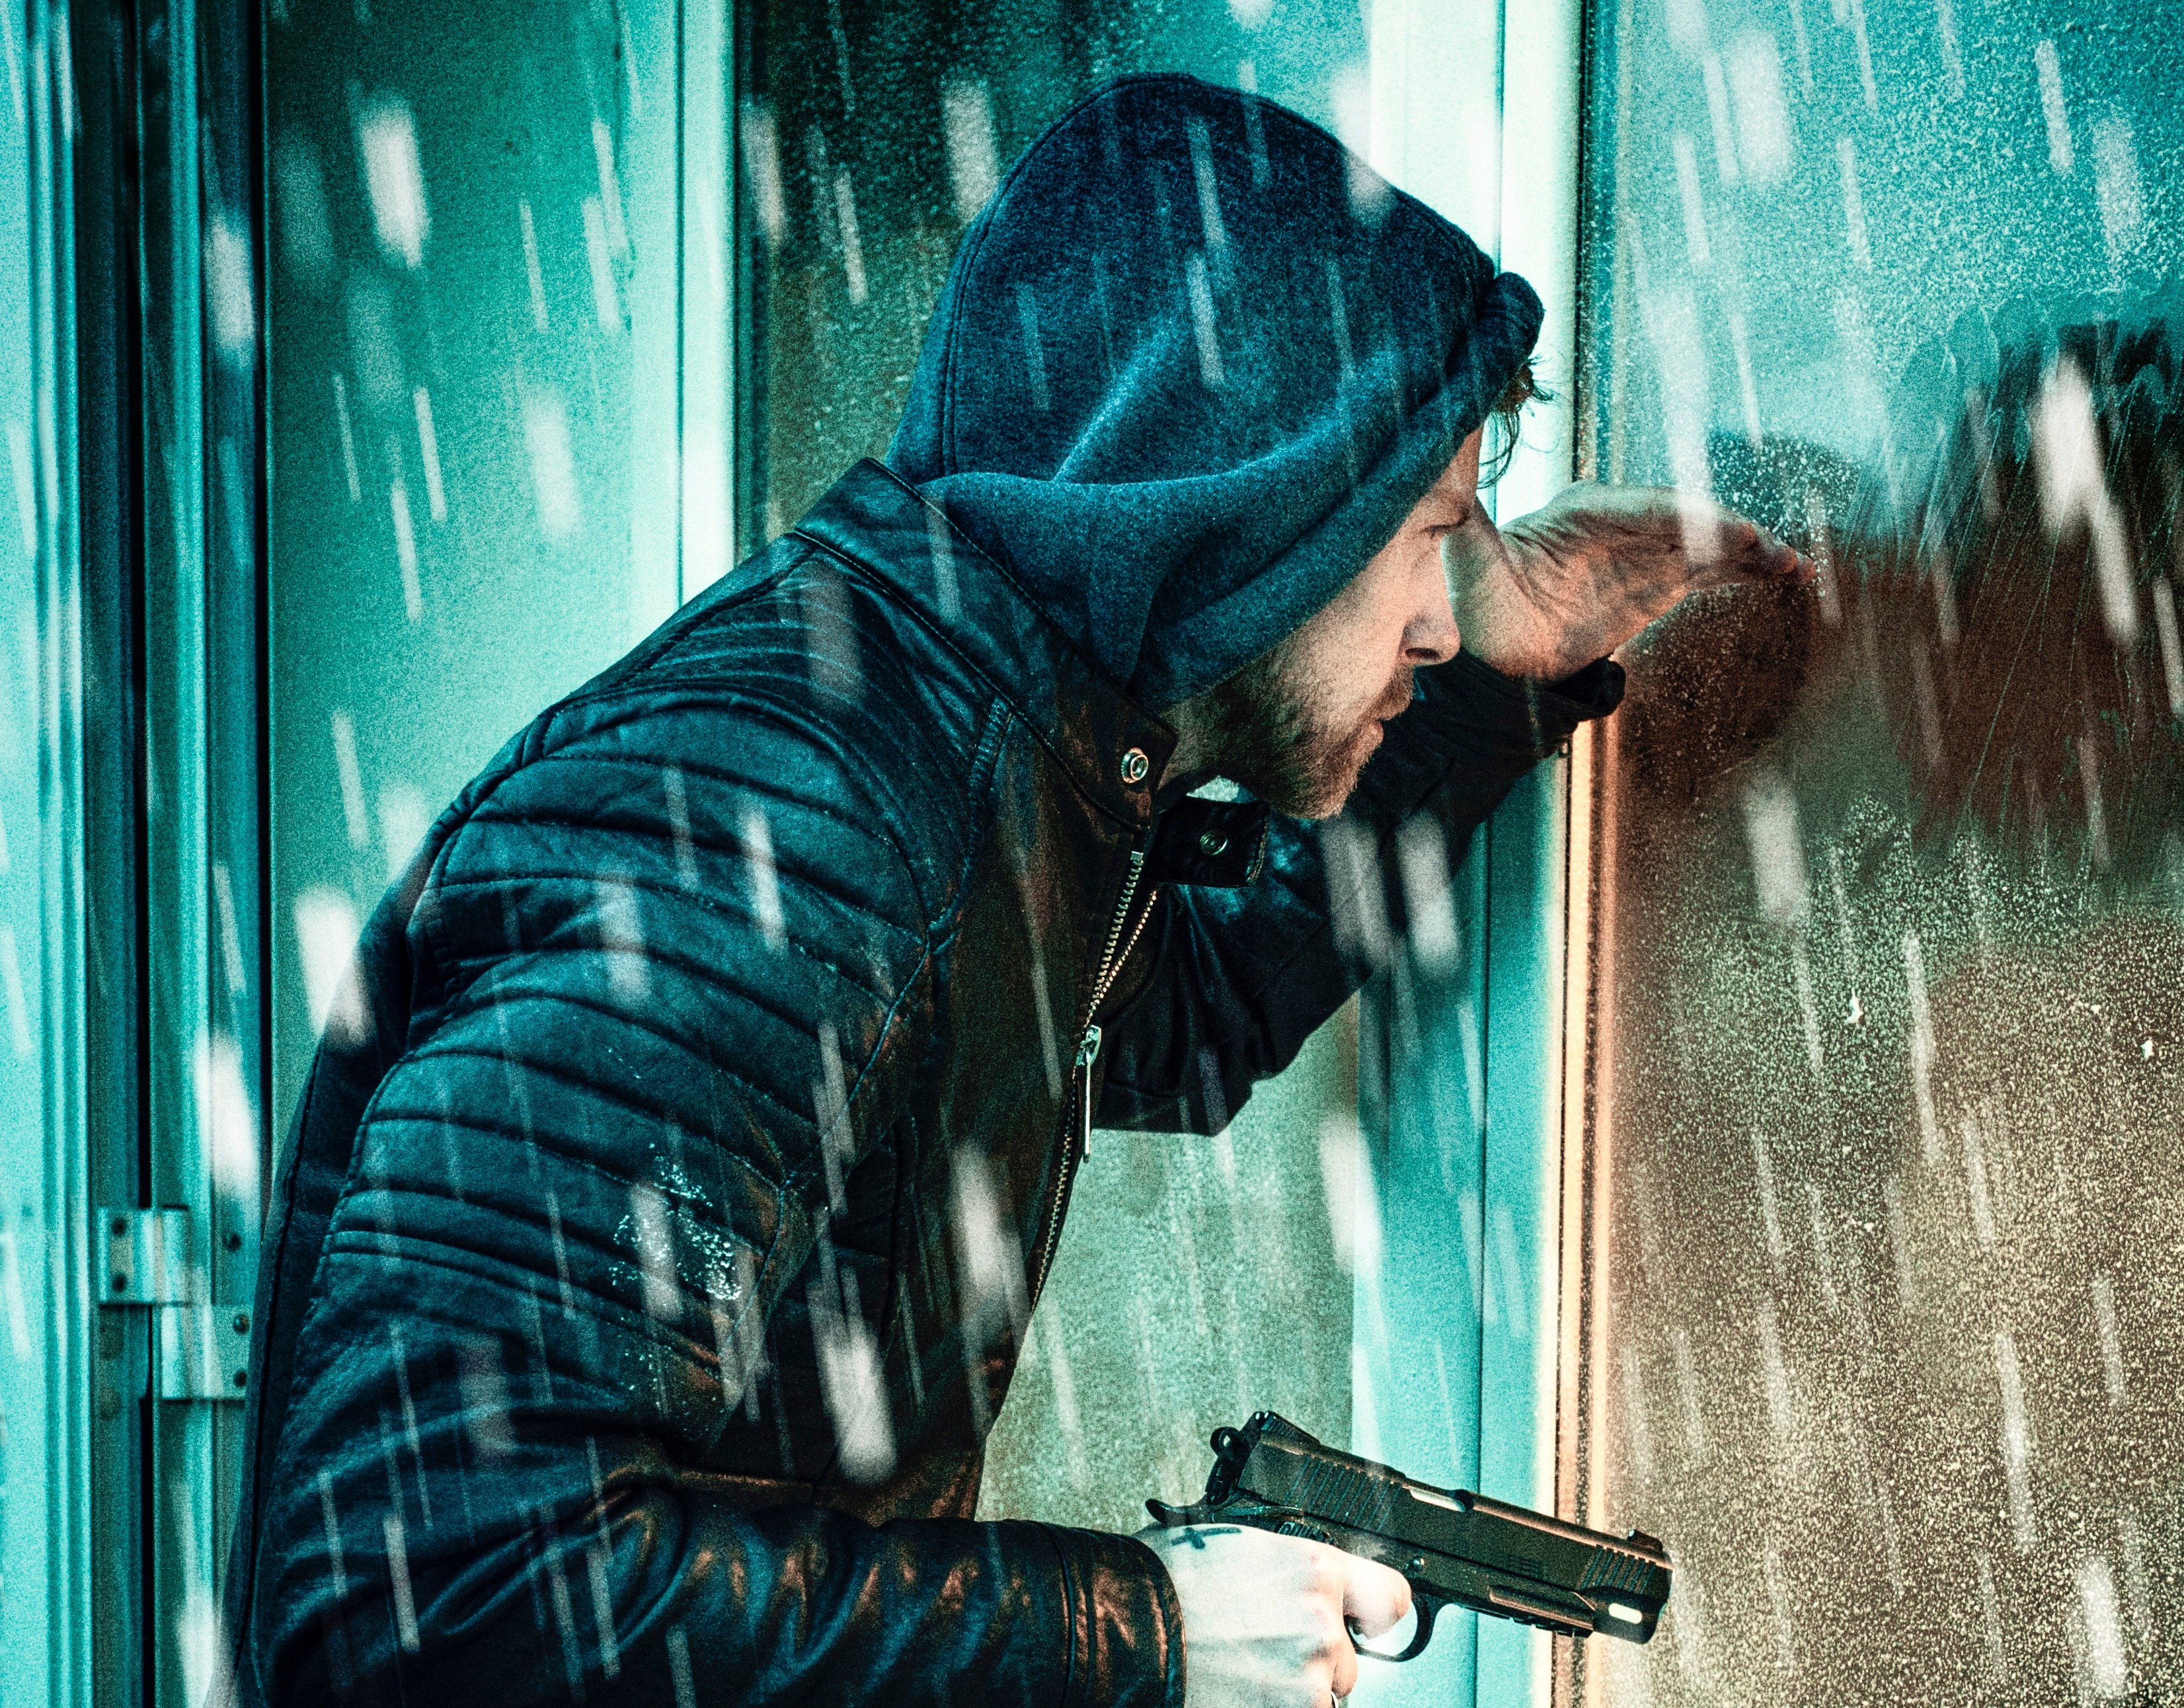 Mann mit Pistole schaut durch ein Fenster in ein Haus